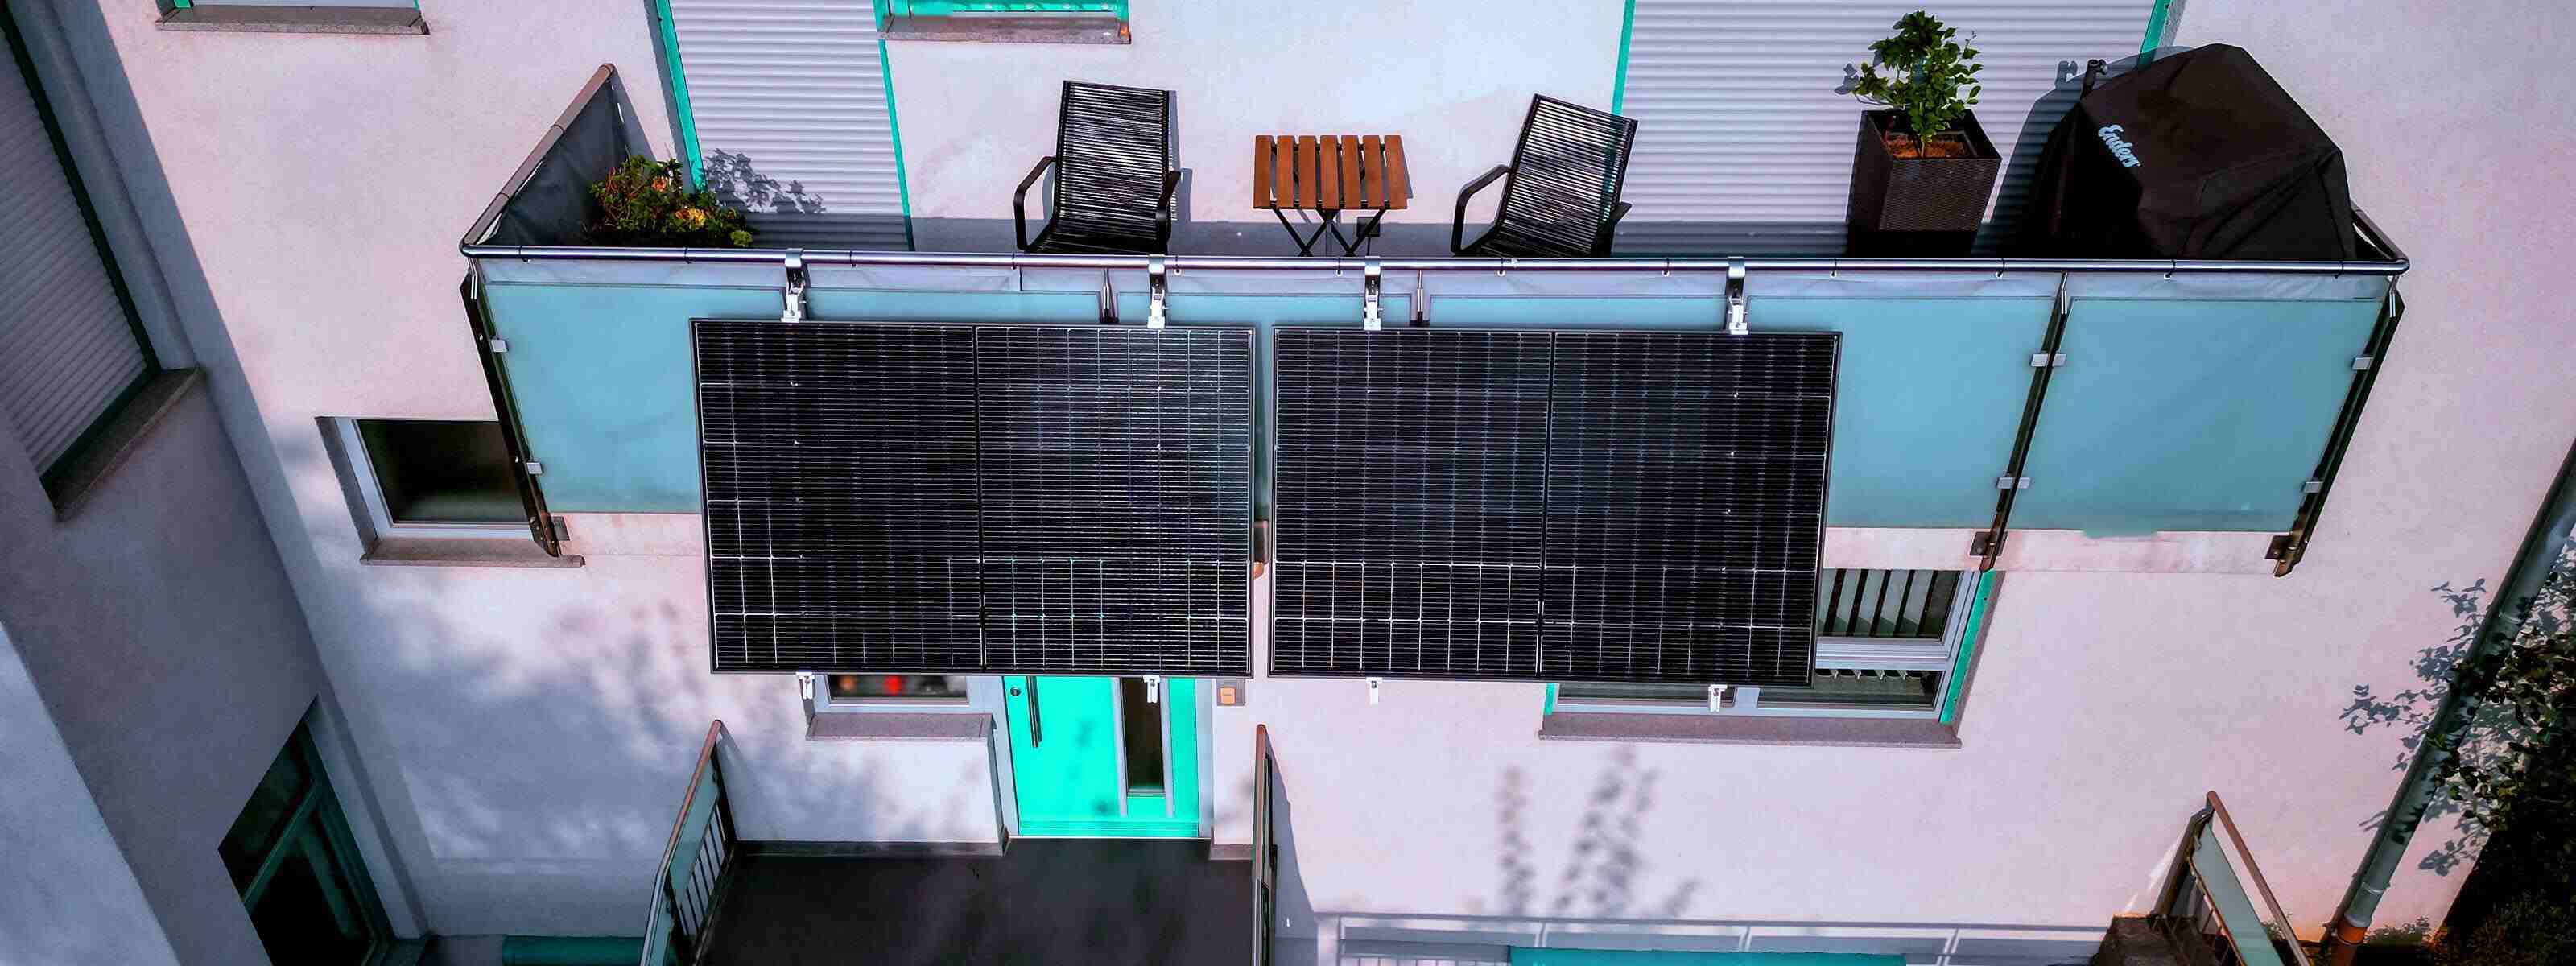 Haus mit Solarpanelen auf dem Dach - grüne Energie für die Energiewende und Einsparungen bei der Stromrechnung